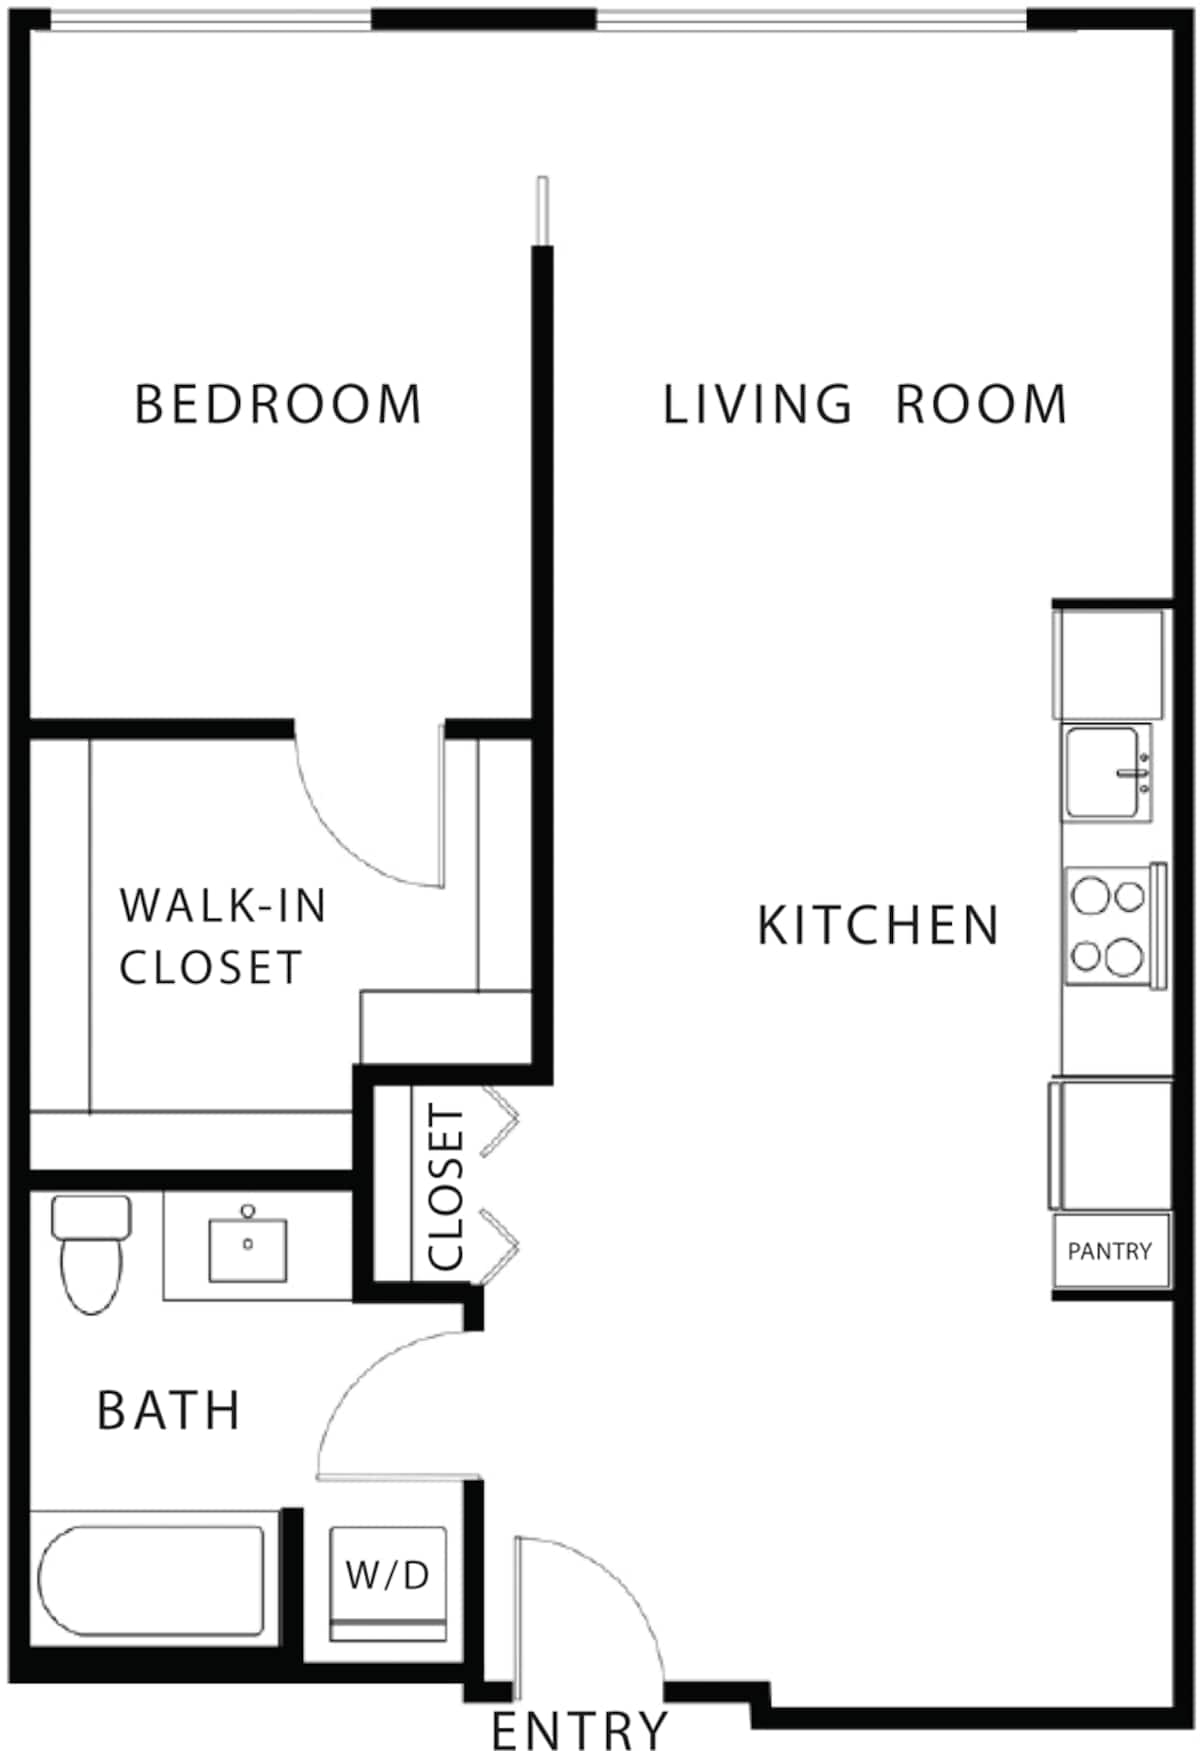 Floorplan diagram for 1.3, showing 1 bedroom